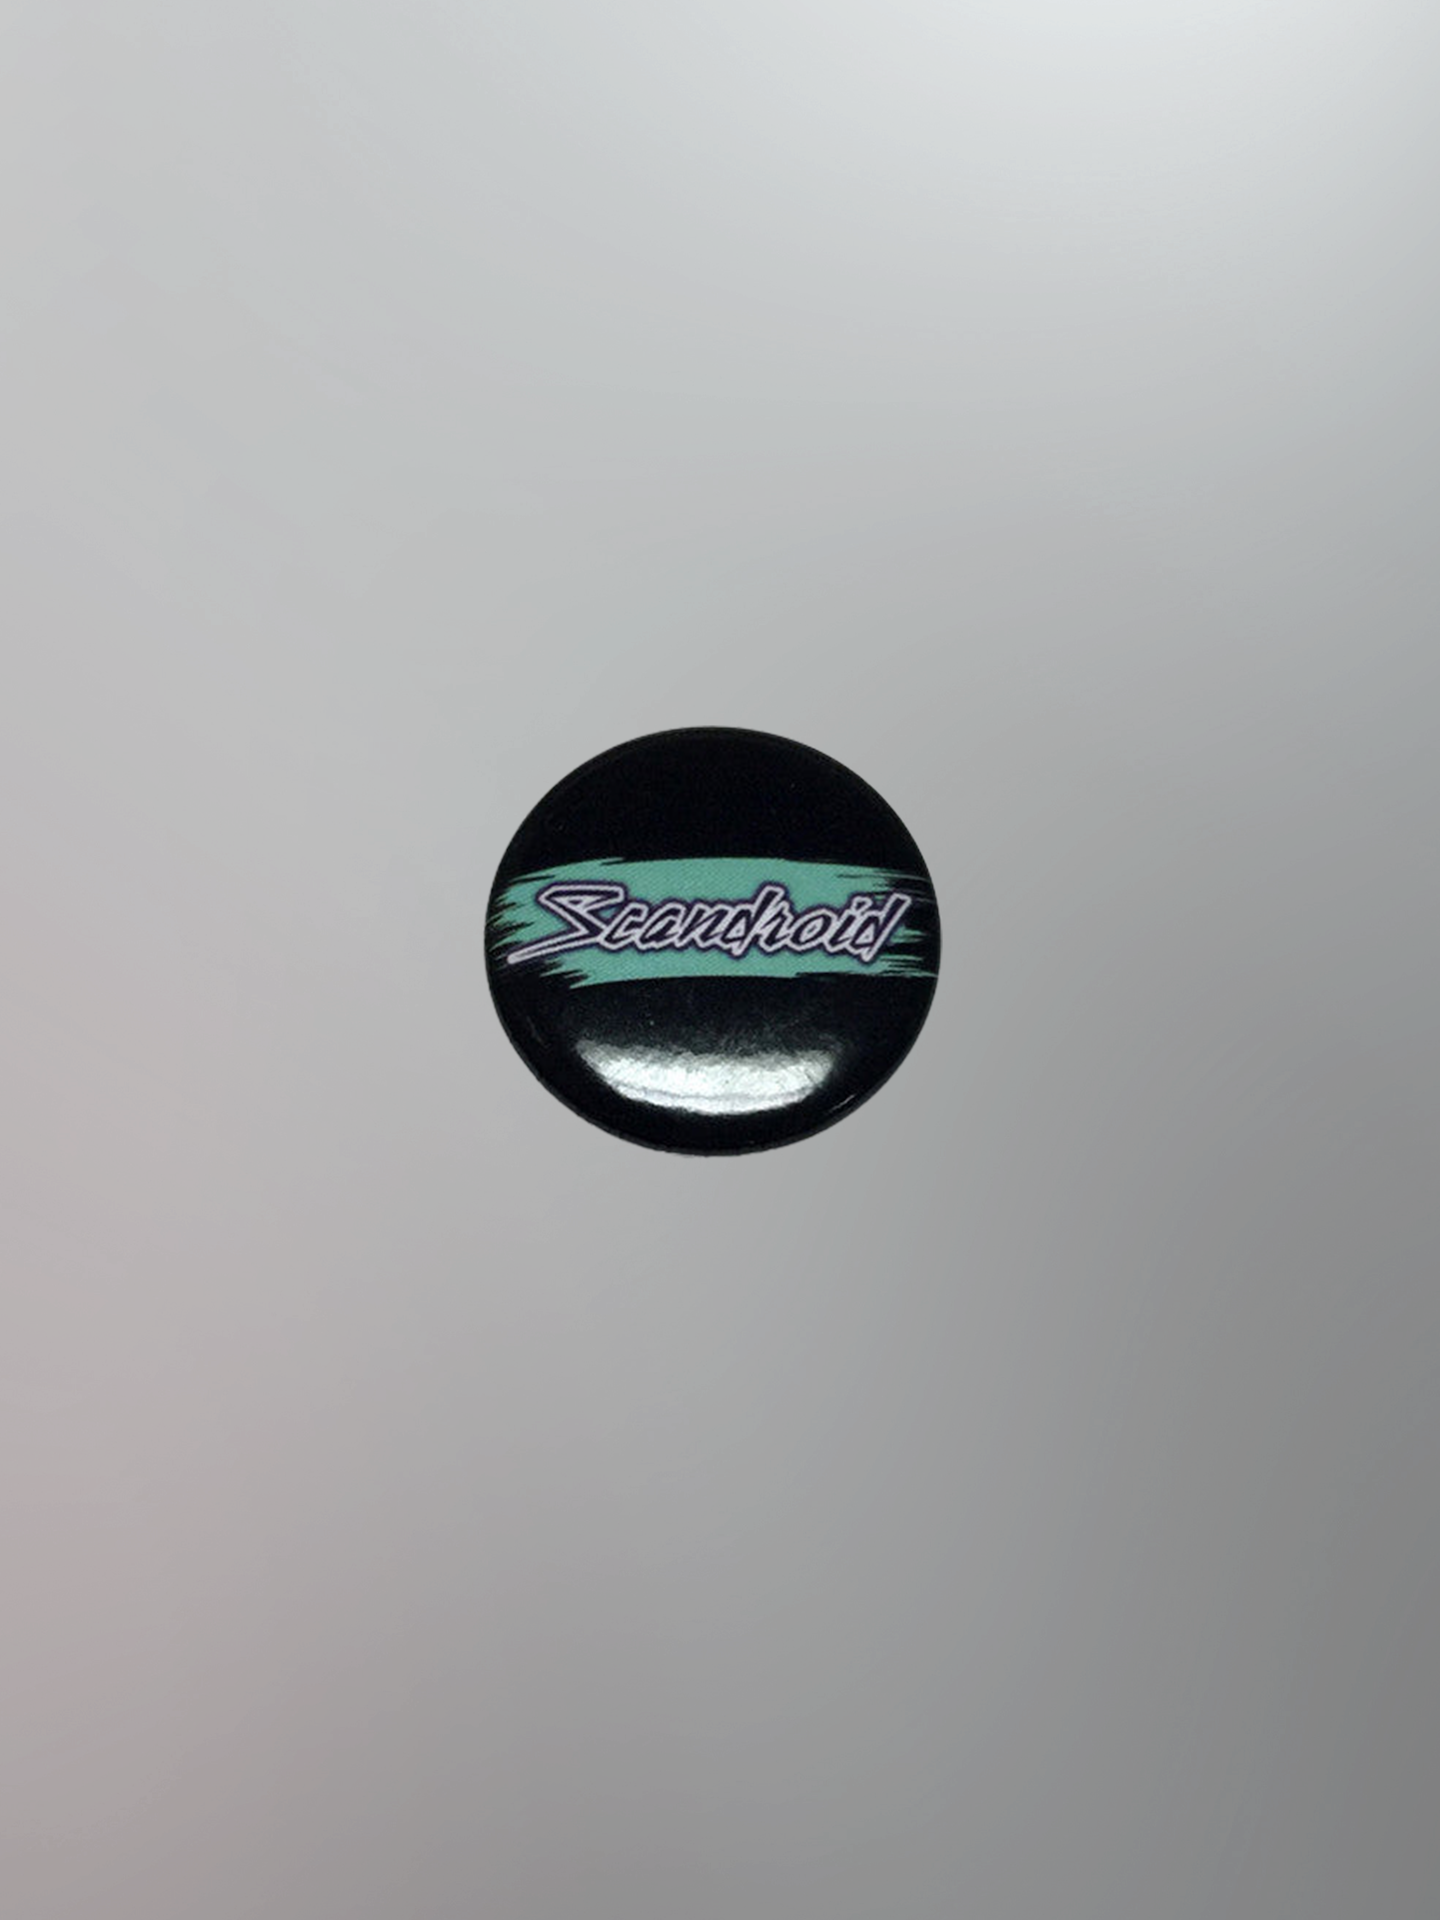 Scandroid - Retro Logo 1" Round Button